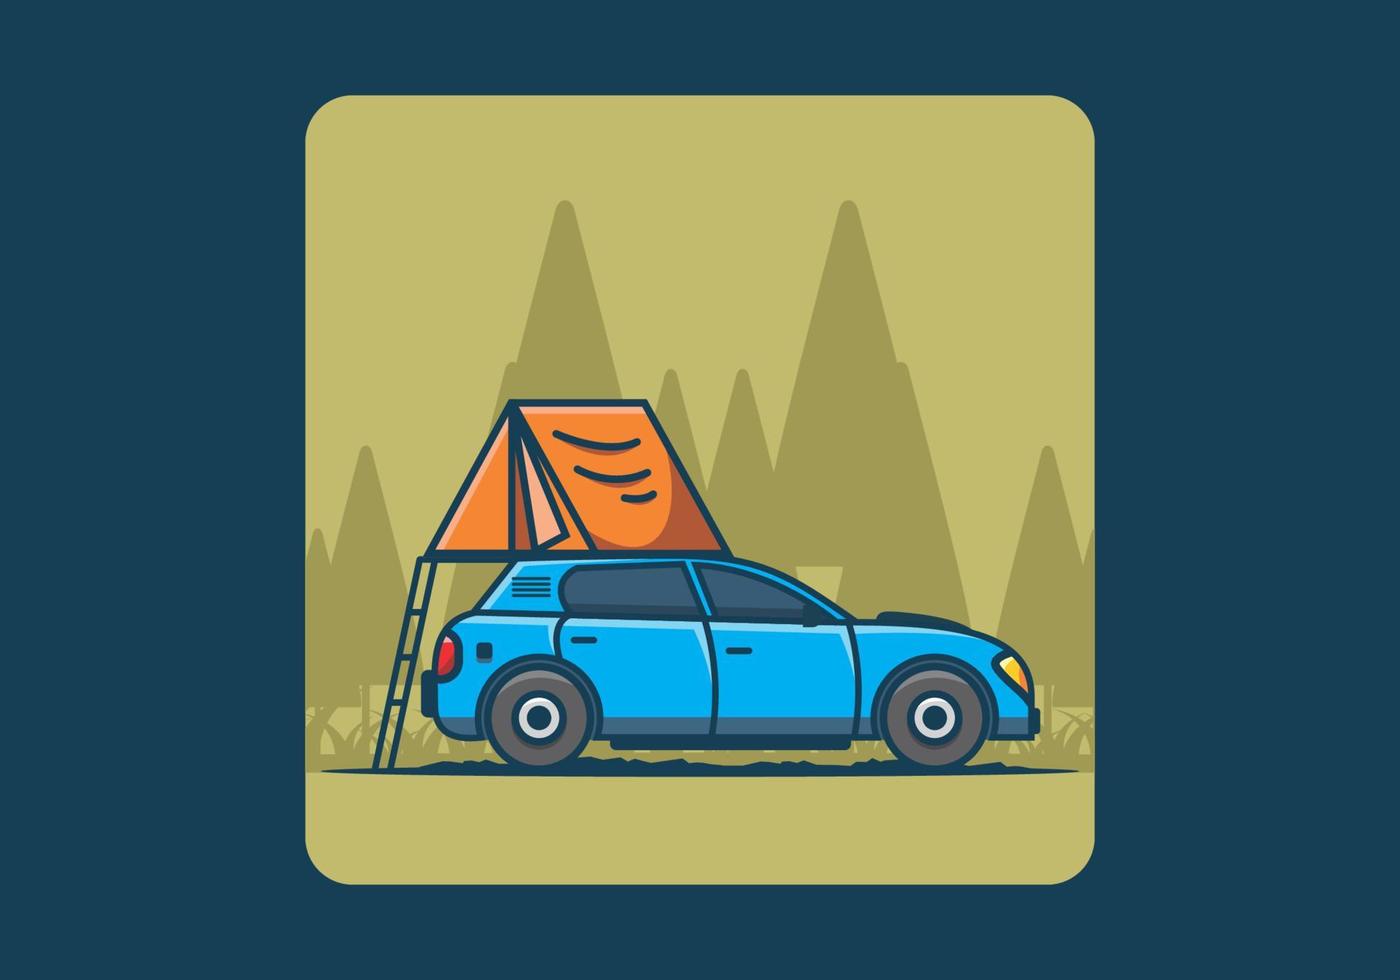 camping con coche ilustración plana vector